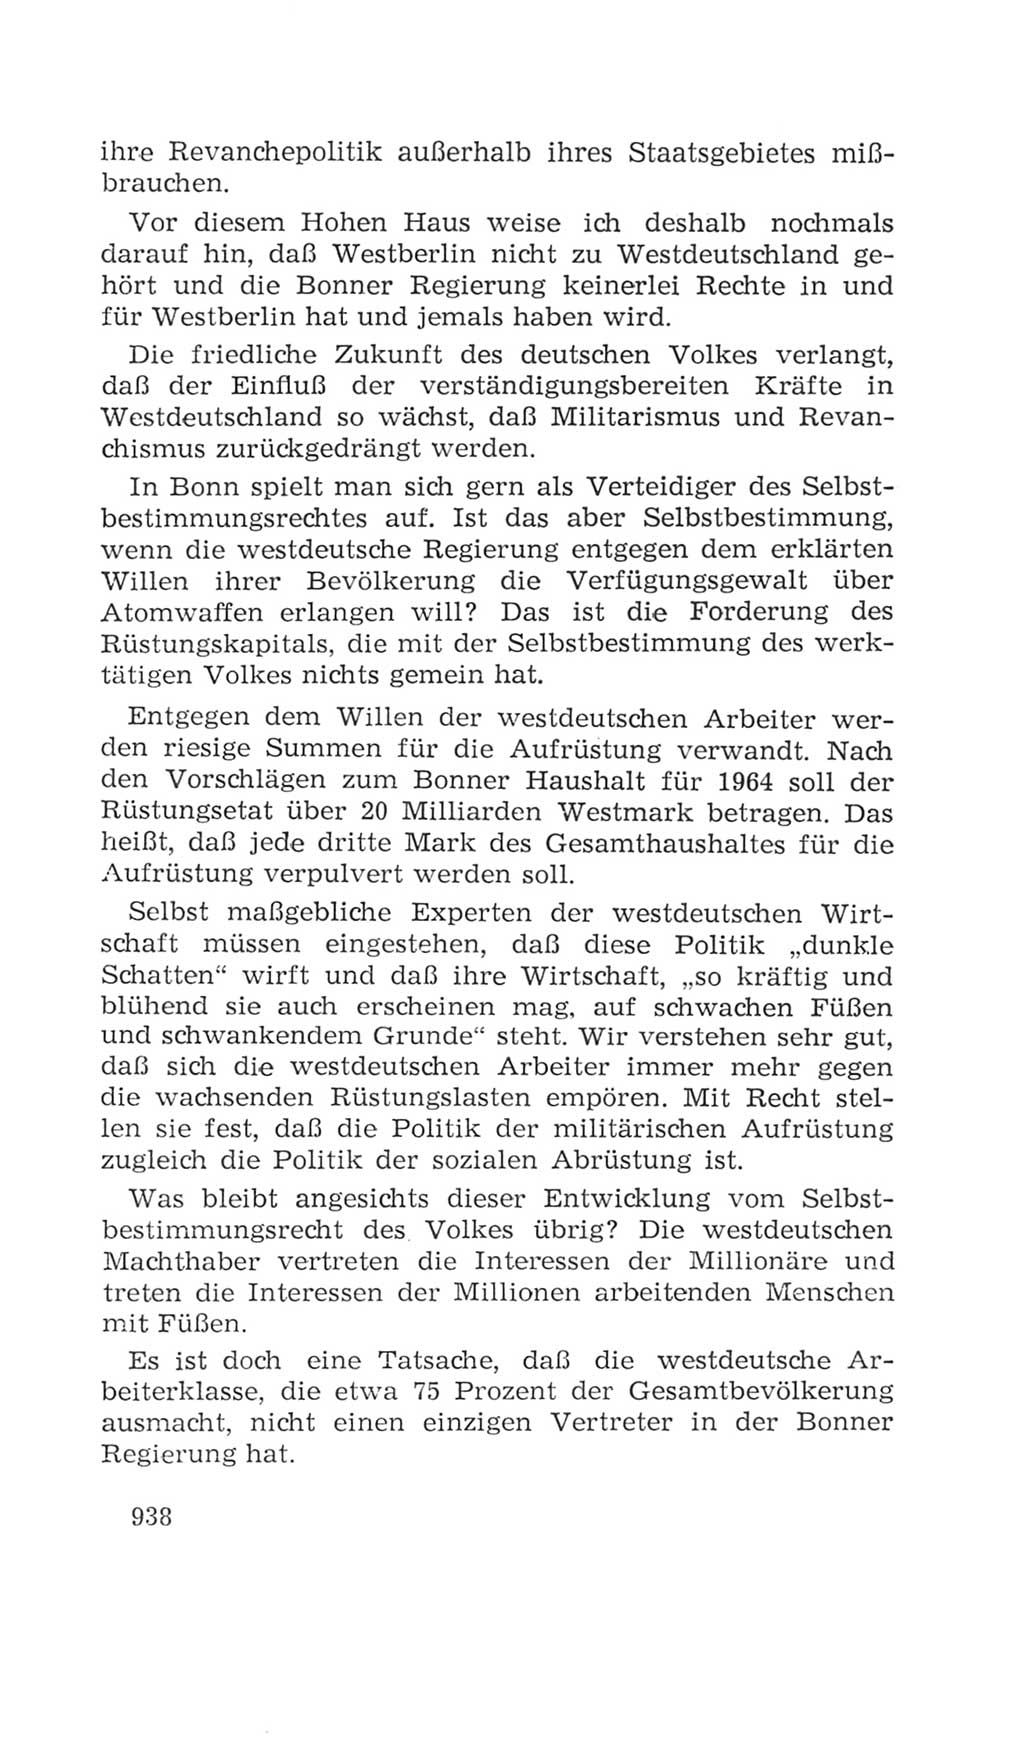 Volkskammer (VK) der Deutschen Demokratischen Republik (DDR), 4. Wahlperiode 1963-1967, Seite 938 (VK. DDR 4. WP. 1963-1967, S. 938)